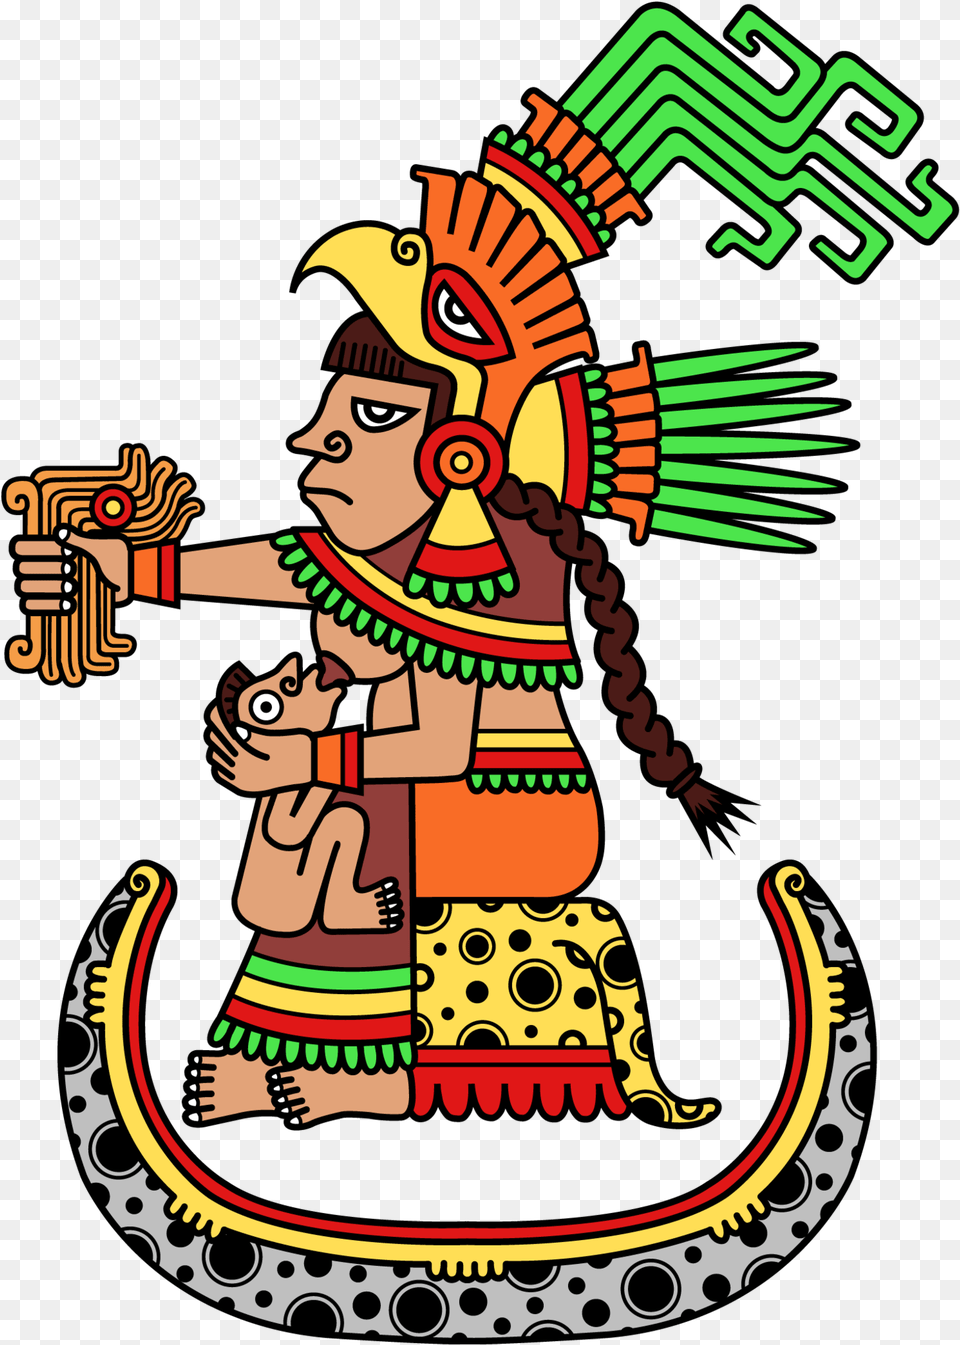 Mtm Medicina Tradicional Mexicana Mexican Traditional Medicine, Emblem, Person, Symbol, Face Free Png